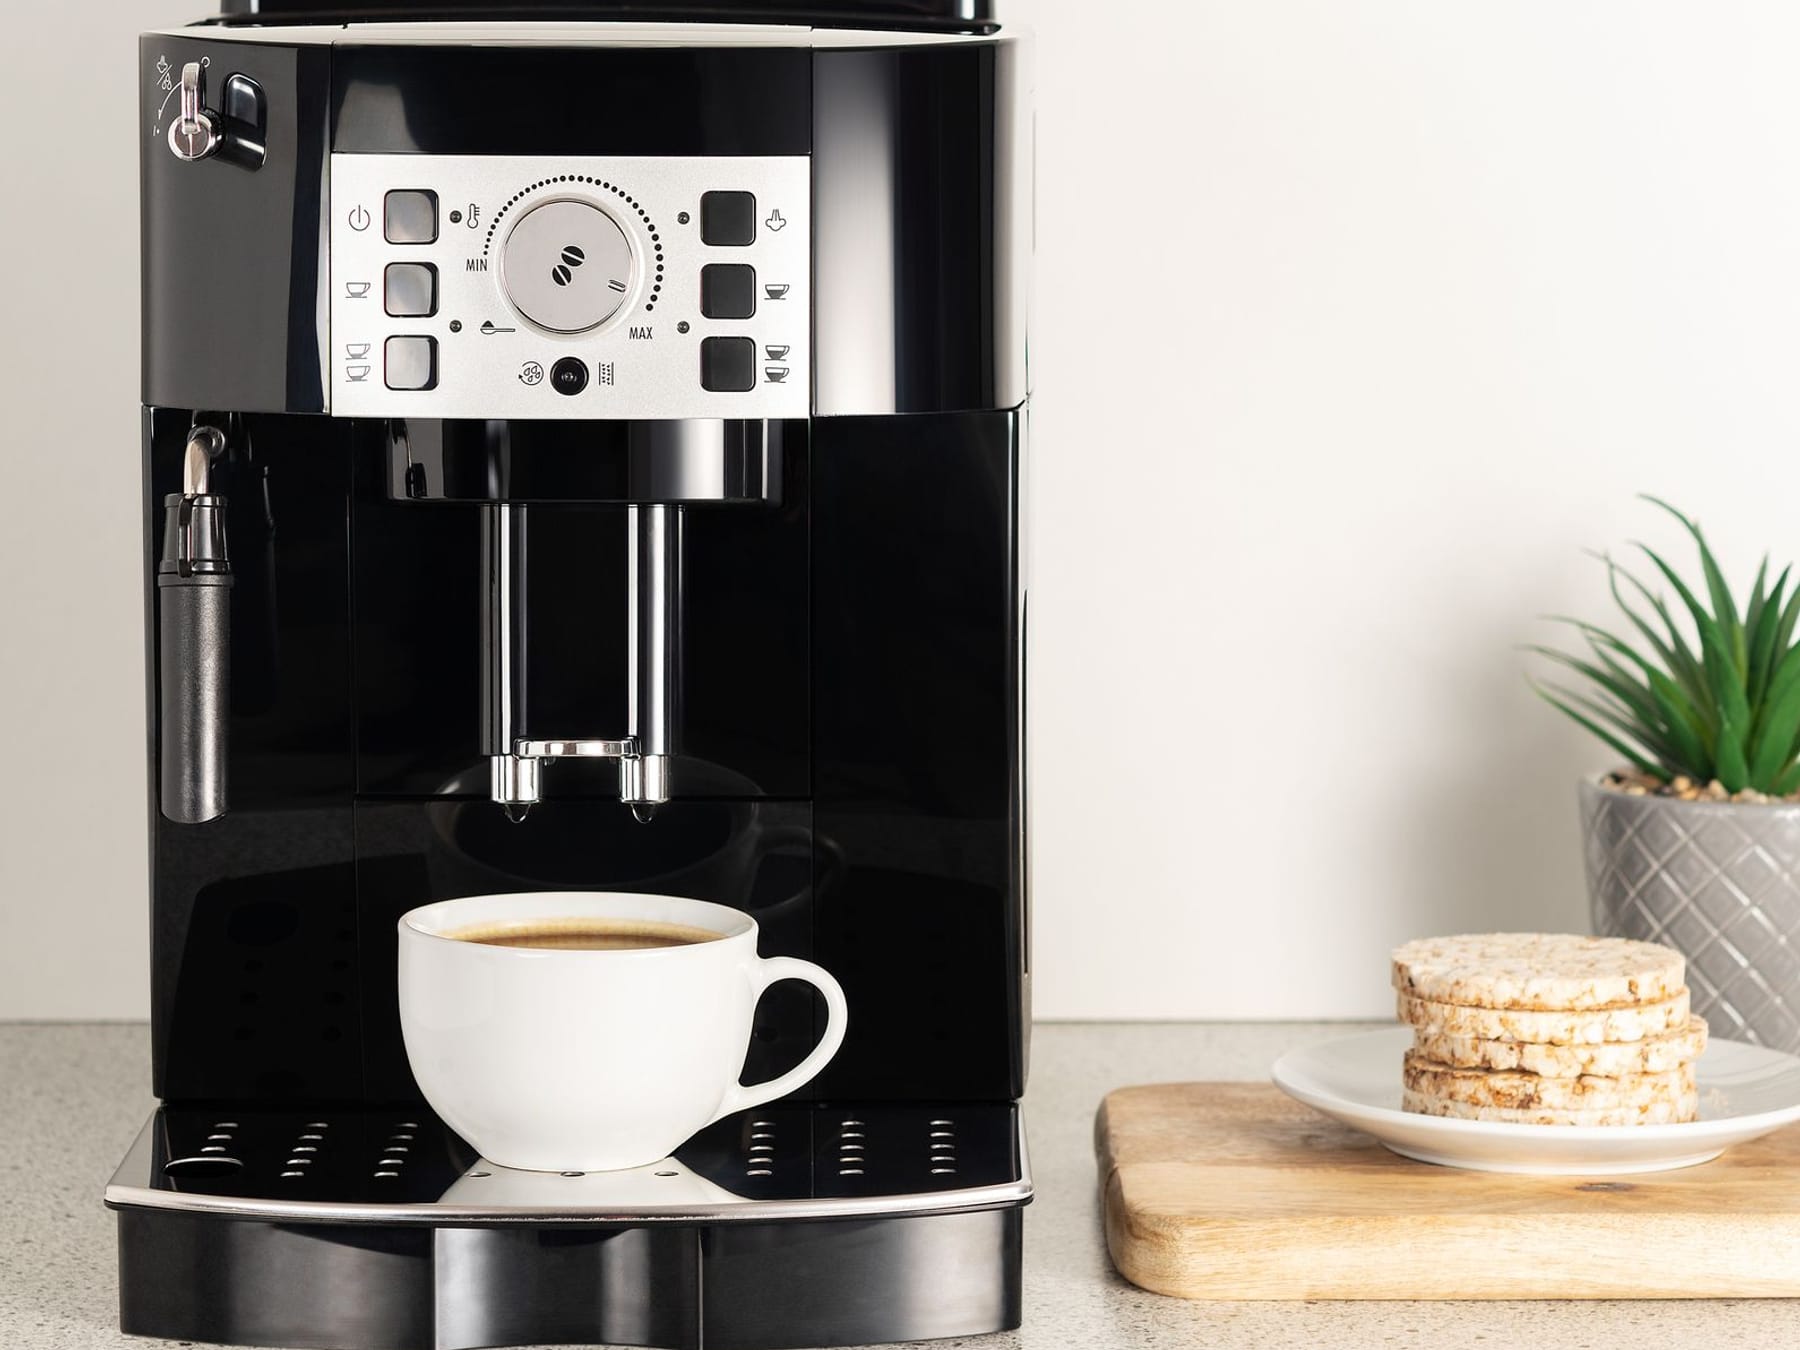 De'Longhi, Philips und Siemens: Die besten Kaffeevollautomaten